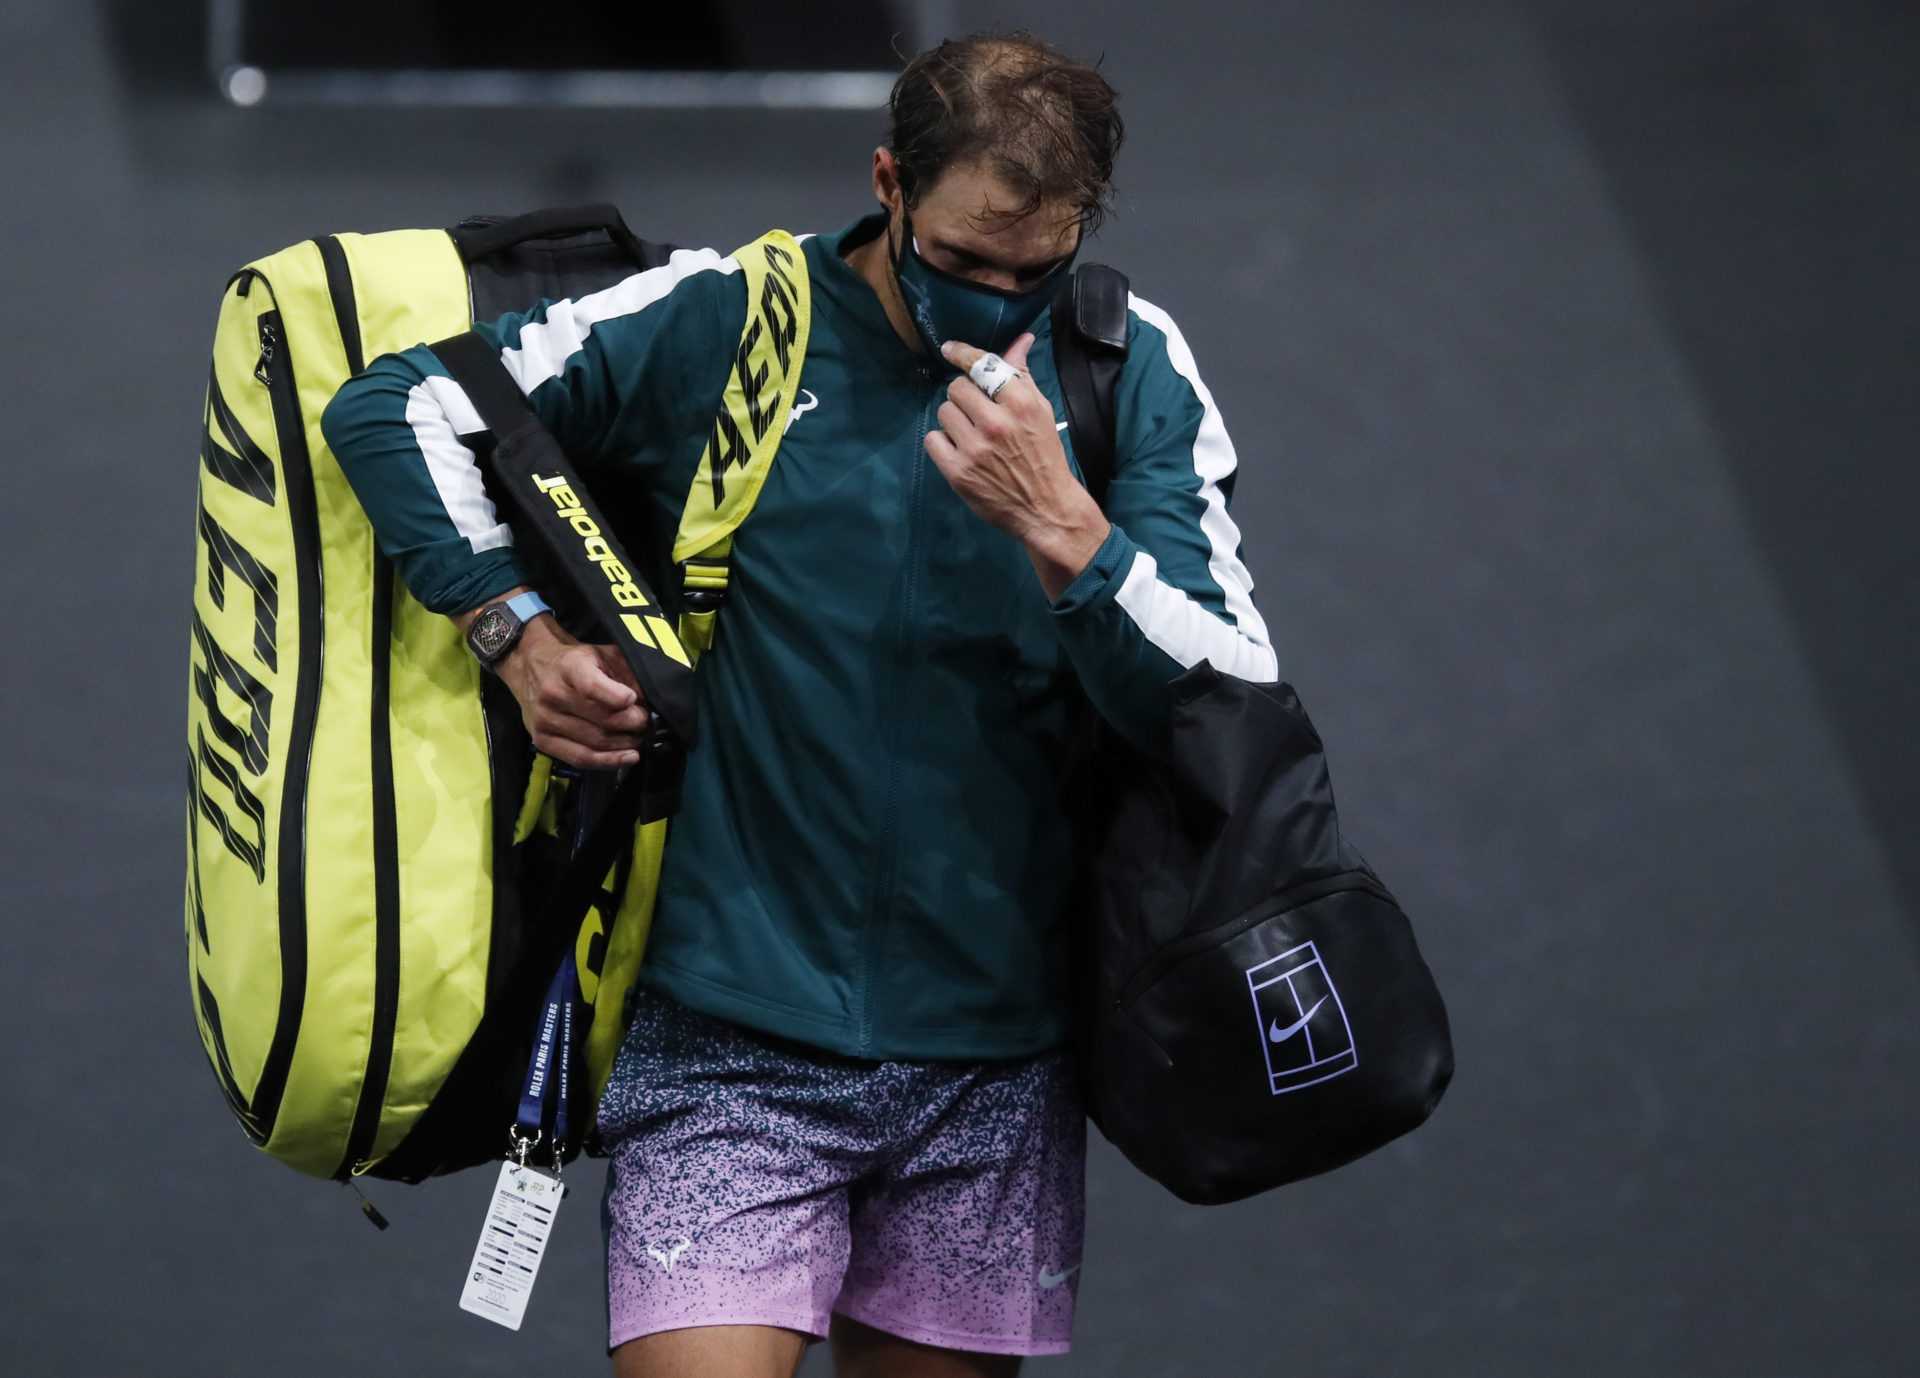 Le directeur du tournoi confiant, Rafael Nadal, rebondira plus fort aux finales ATP 2020